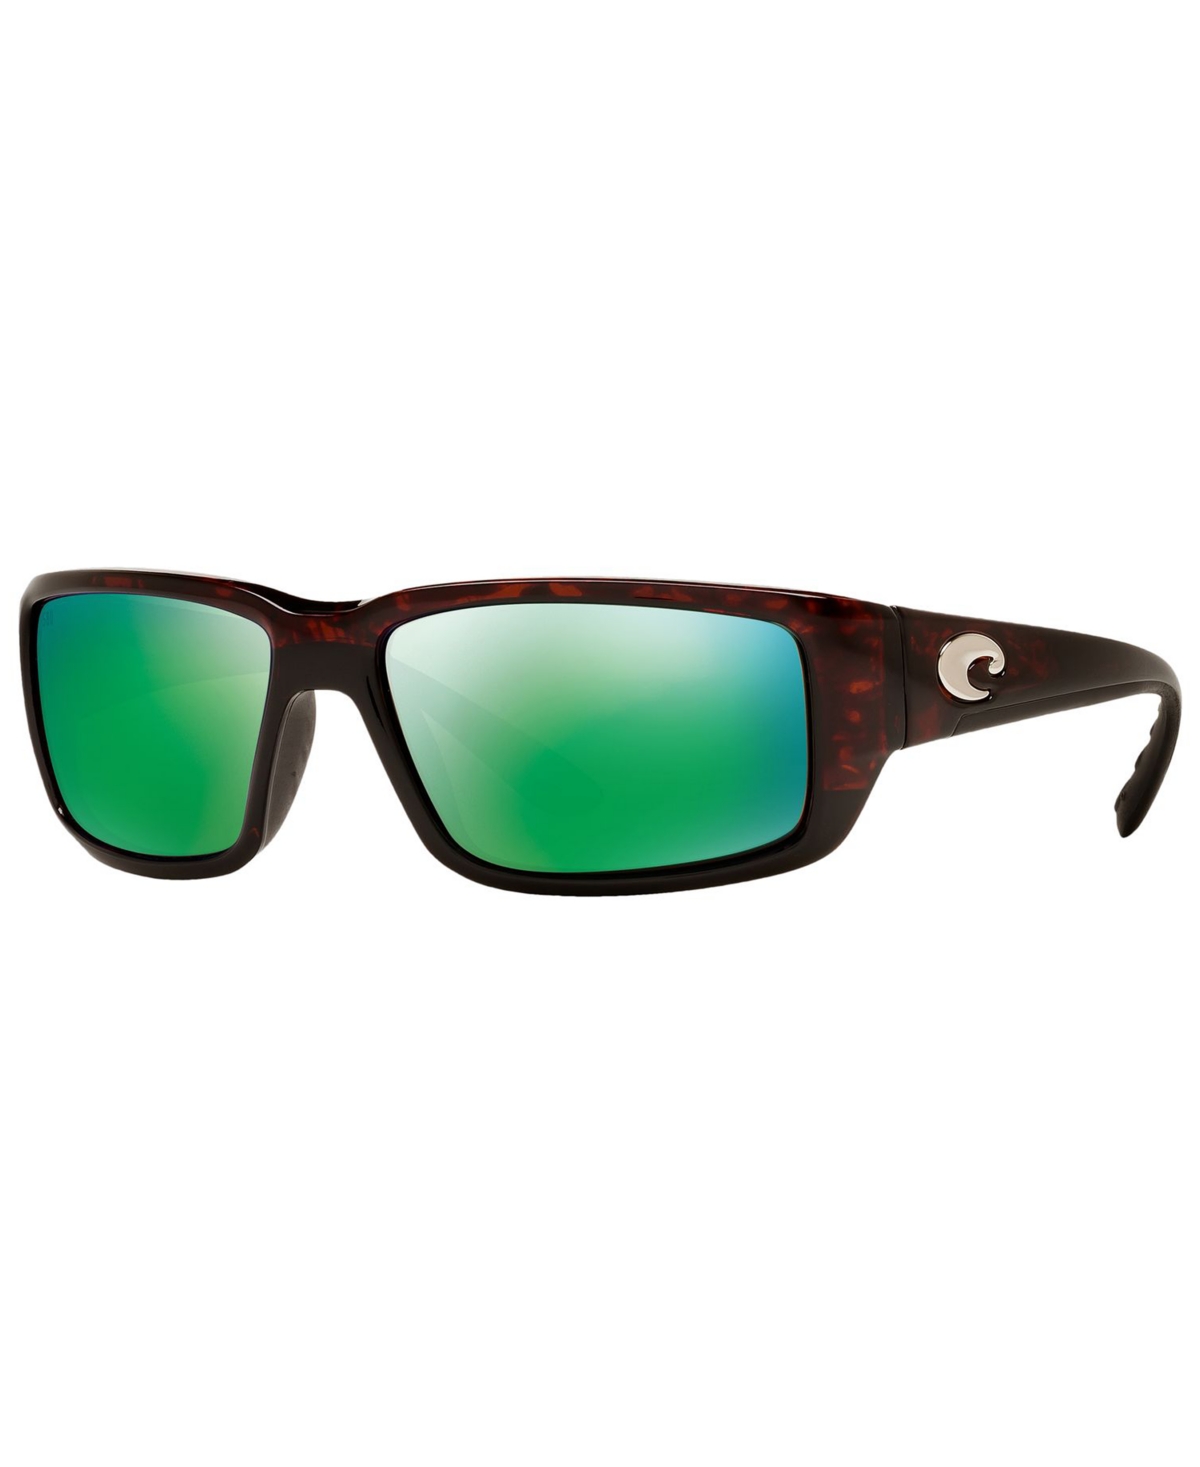 Costa Del Mar Men's Polarized Sunglasses, Fantail In Tortoise,green Mirror